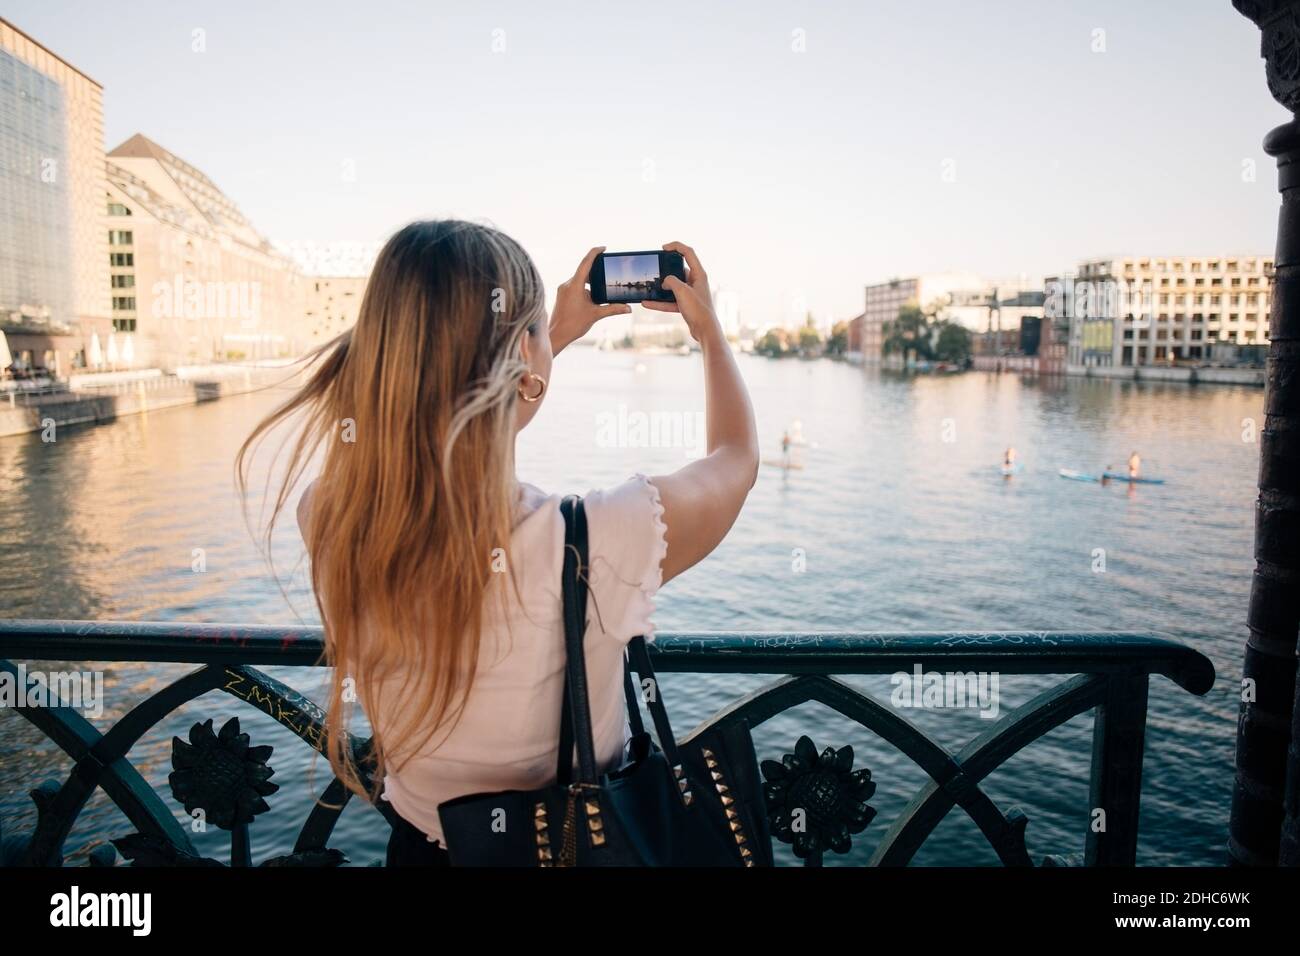 Vista trasera de la joven fotografiando el río a través del teléfono móvil en la ciudad Foto de stock